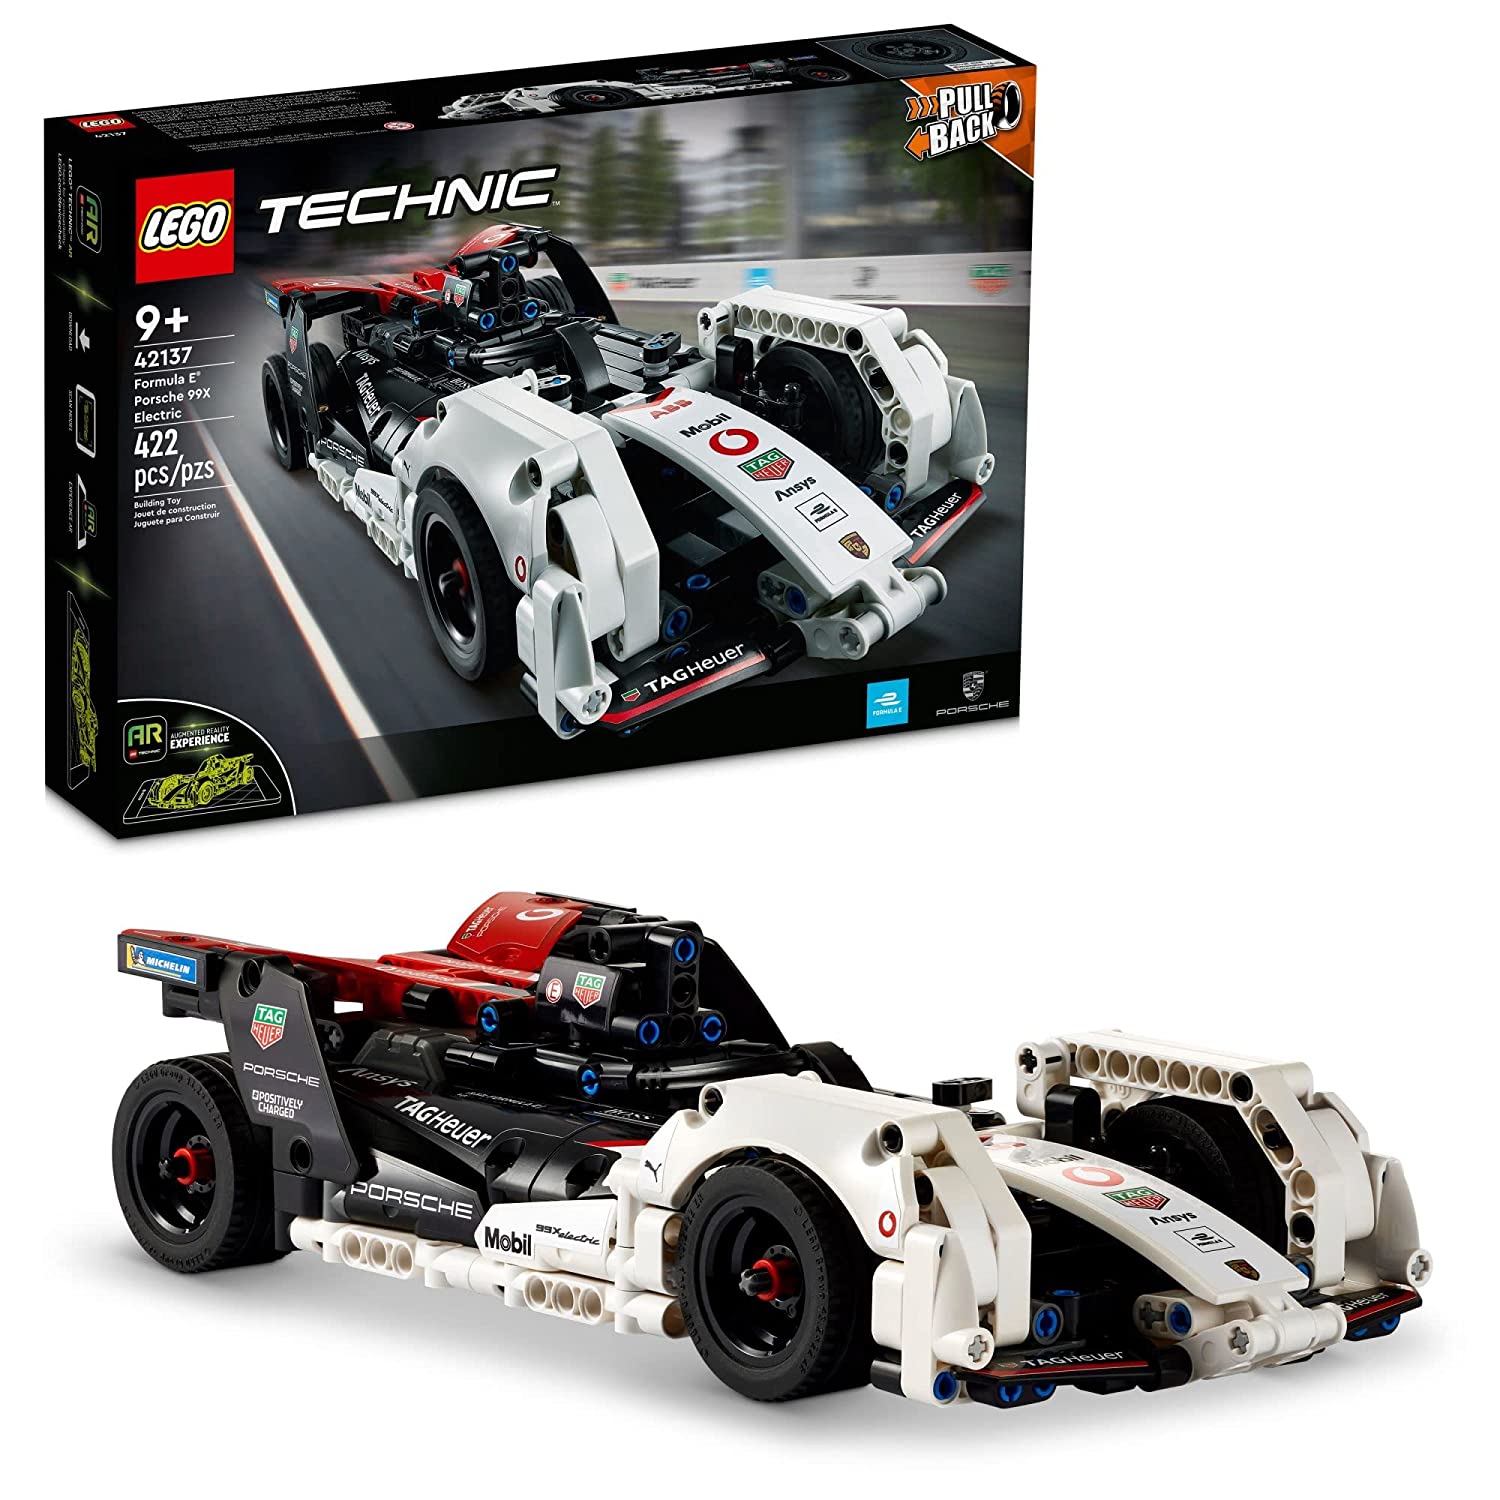 LEGO Technic Formula E Porsche 99X Electric 42137 Lego